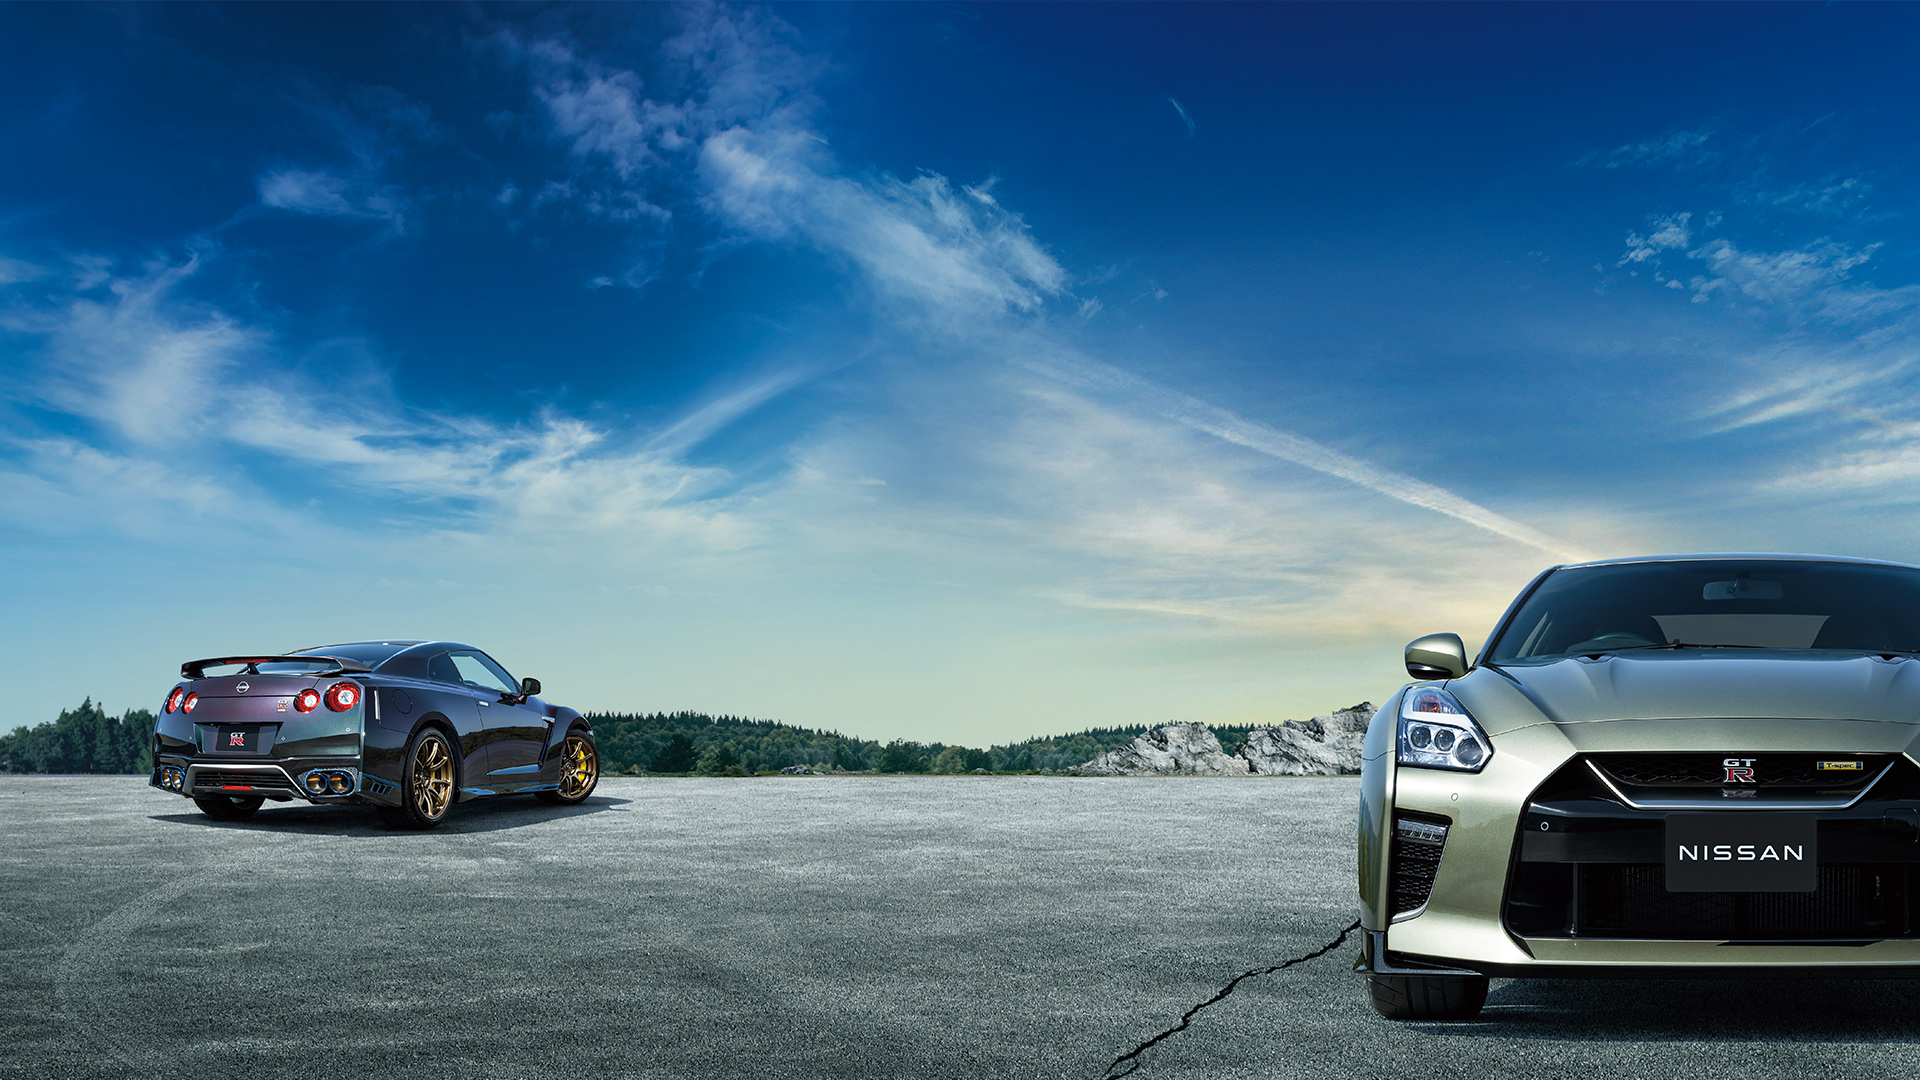 Nissan Skyline GT-R R36  Carros de luxo, Carros, Gran turismo